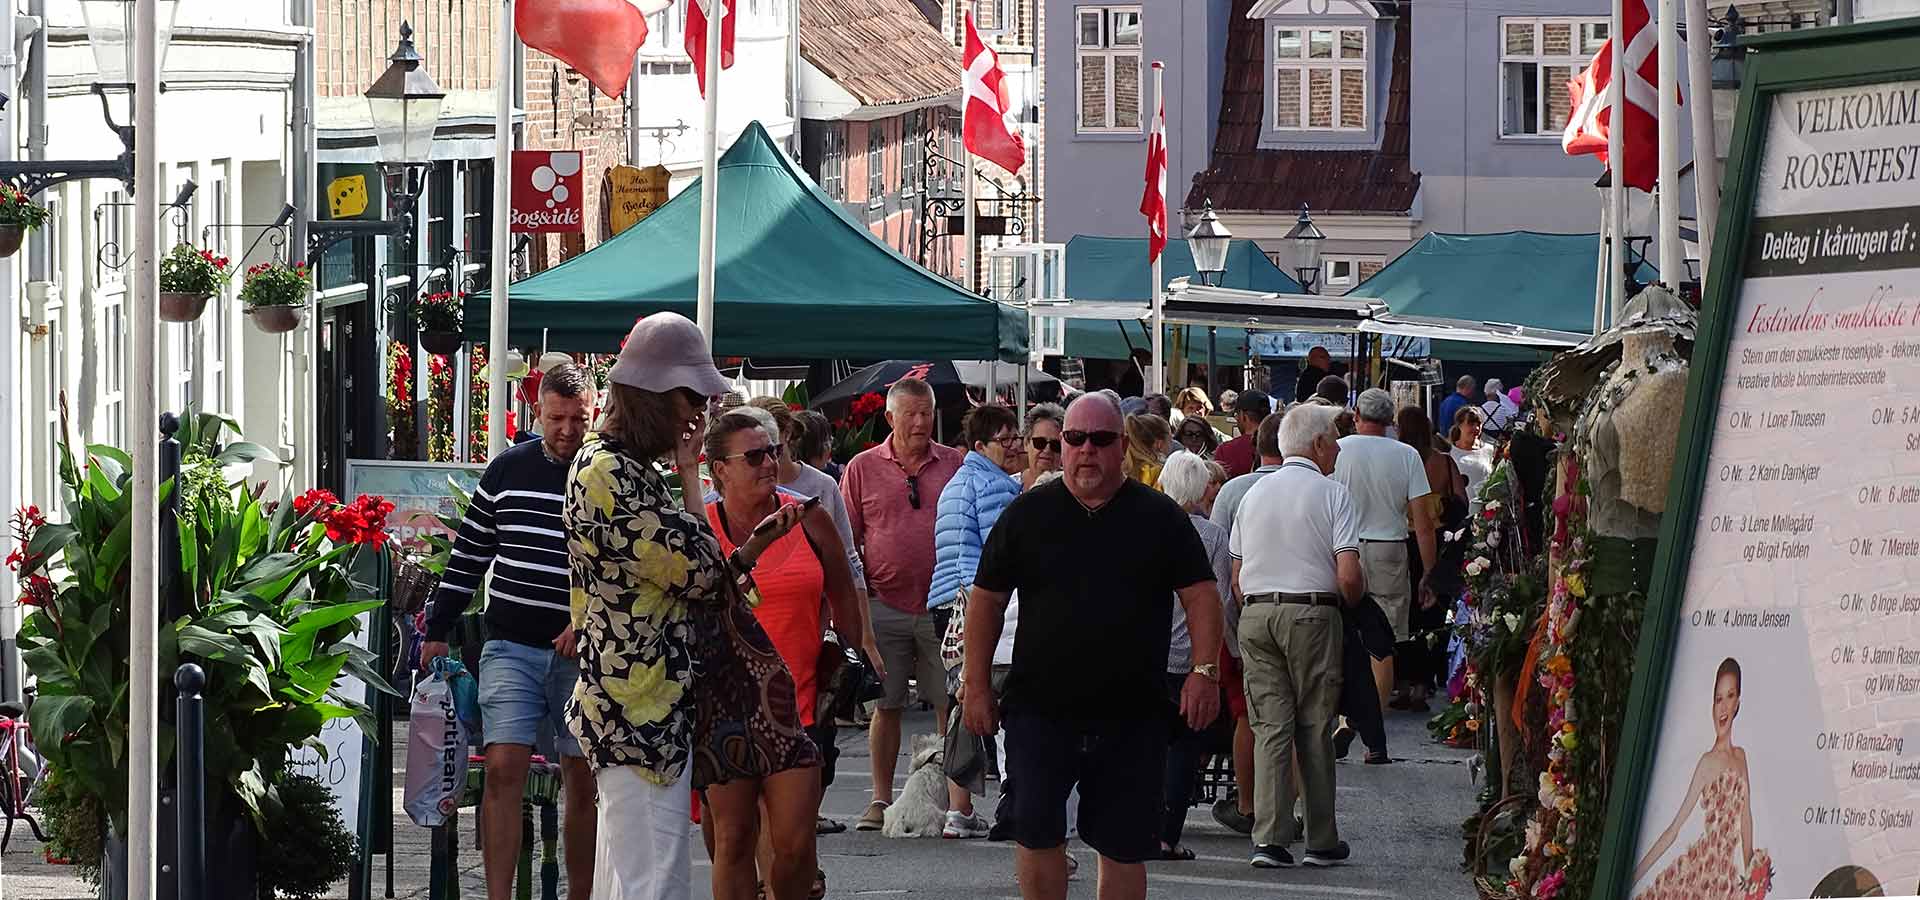 Boder og masser af gæster i byens gågade under Rosenfestival